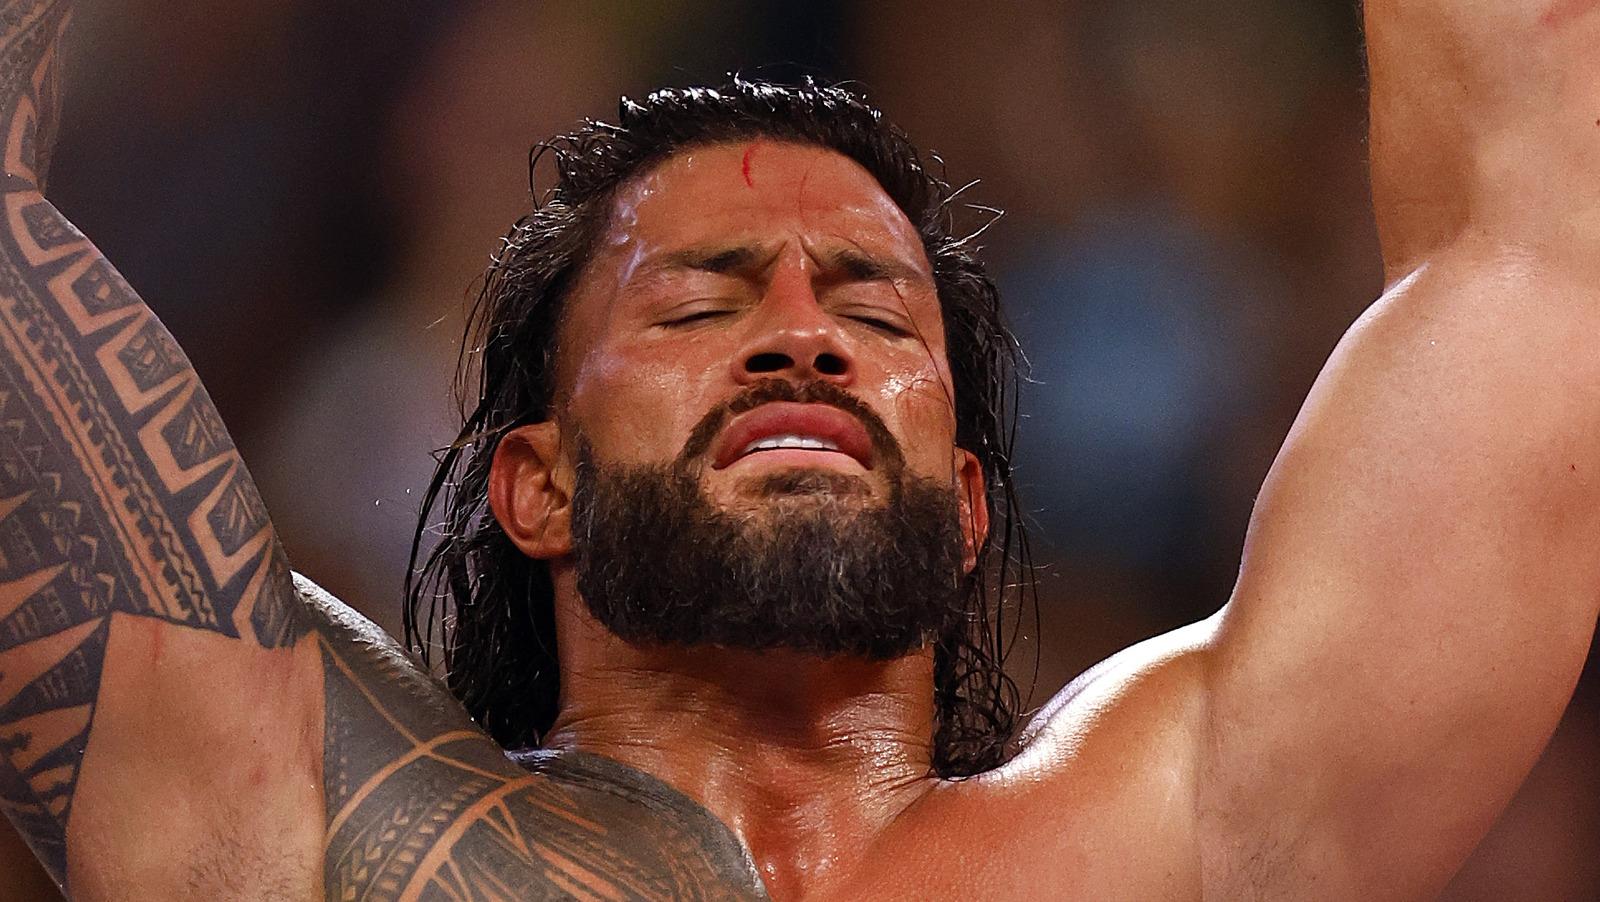 Kurt Angle cree que Roman Reigns podría ser campeón por demasiado tiempo, le preocupa que los fanáticos pierdan interés